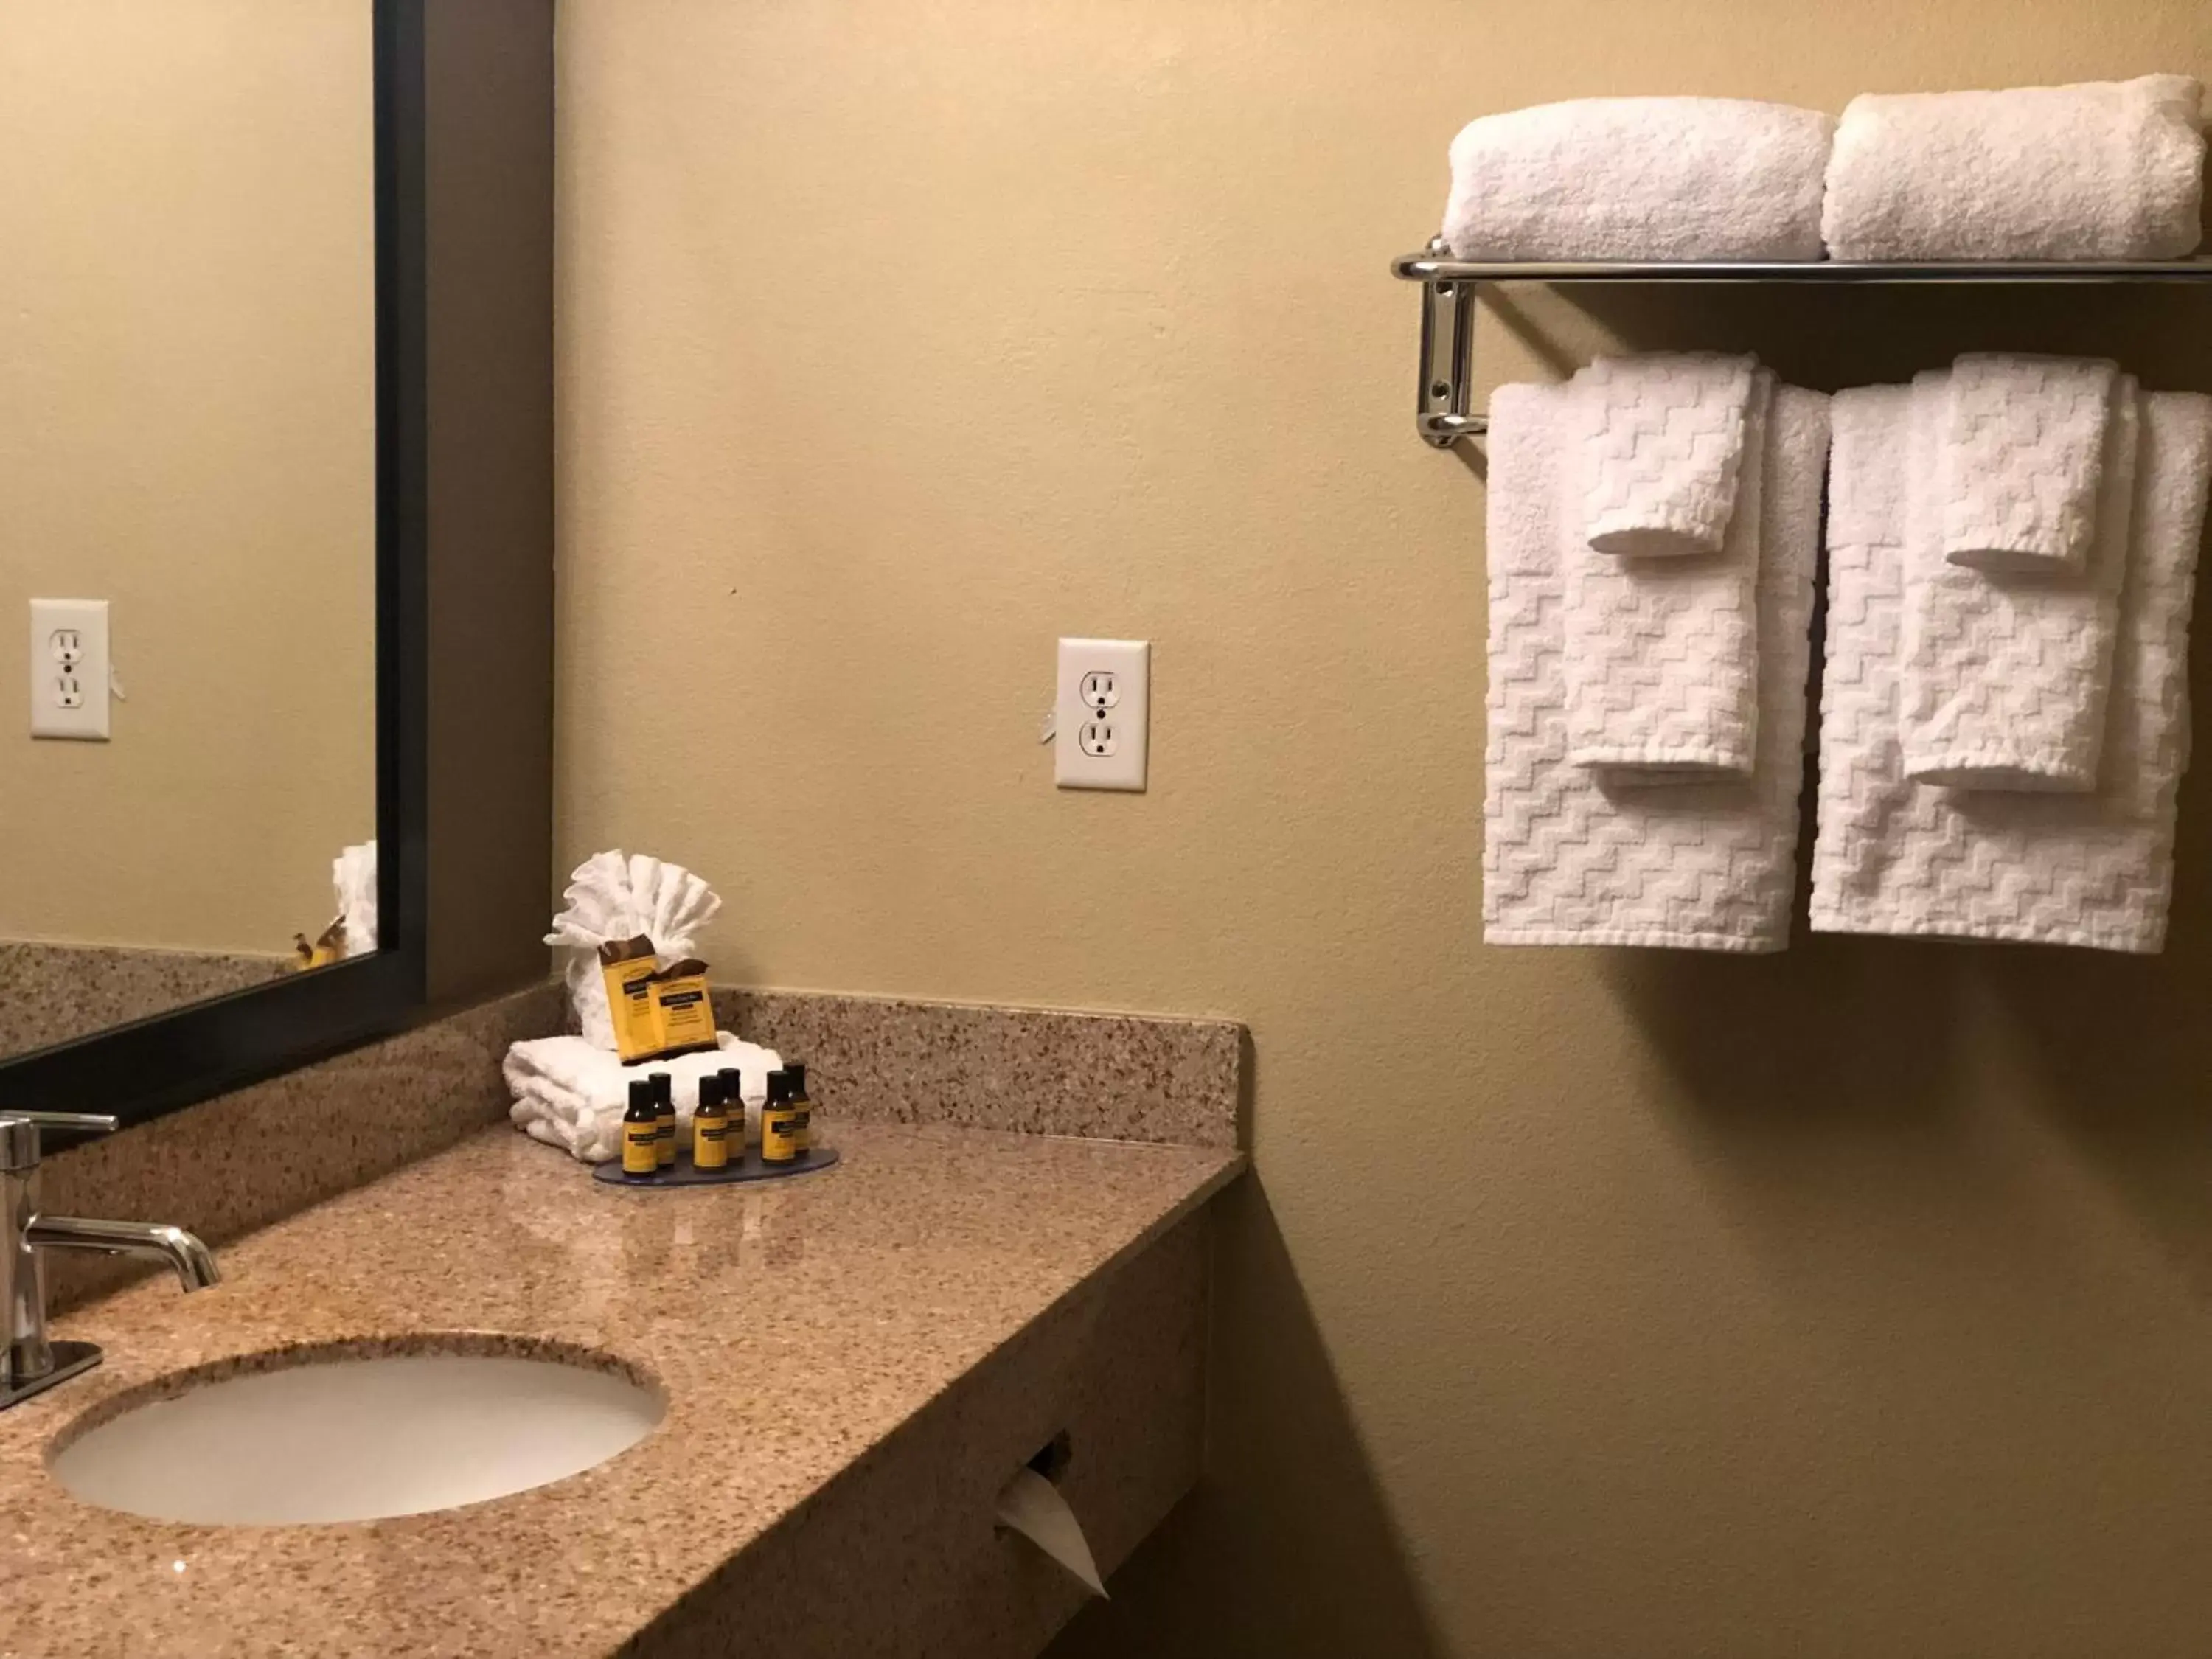 Bathroom in Best Western Plus Hill Country Suites - San Antonio